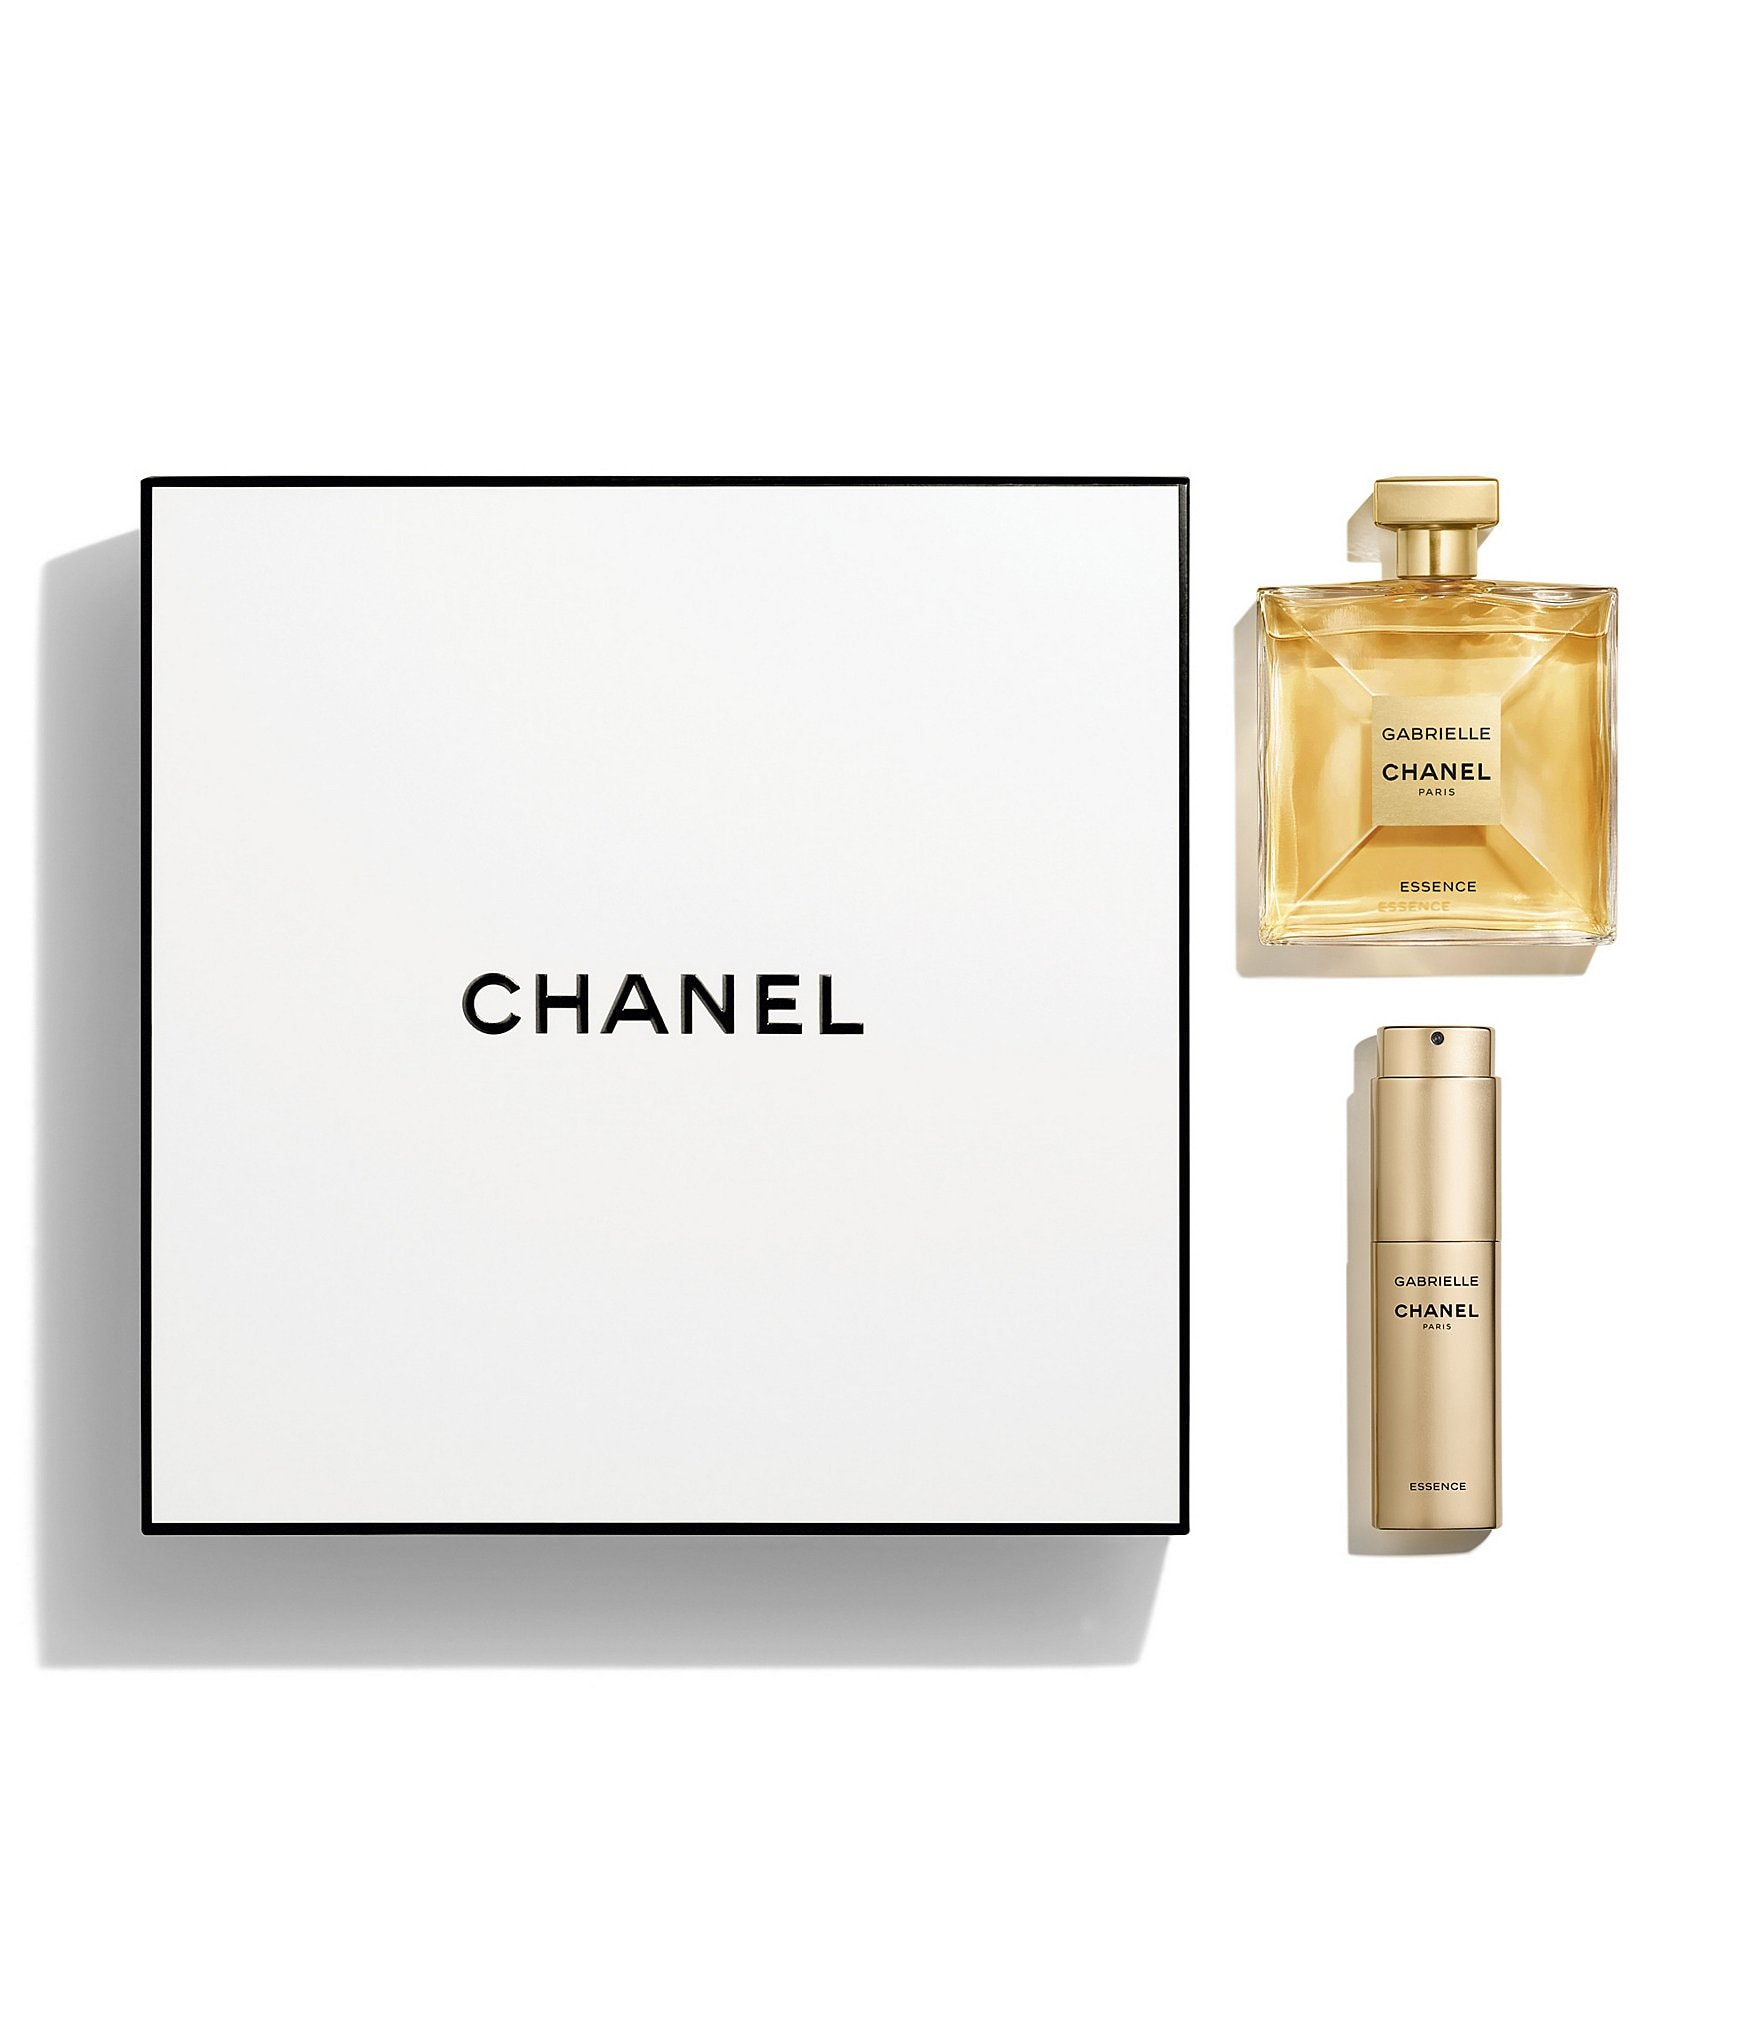 Chanel Gabrielle Chanel Essence 3.4 oz. Eau de Parfum Twist and Spray Set, Womens